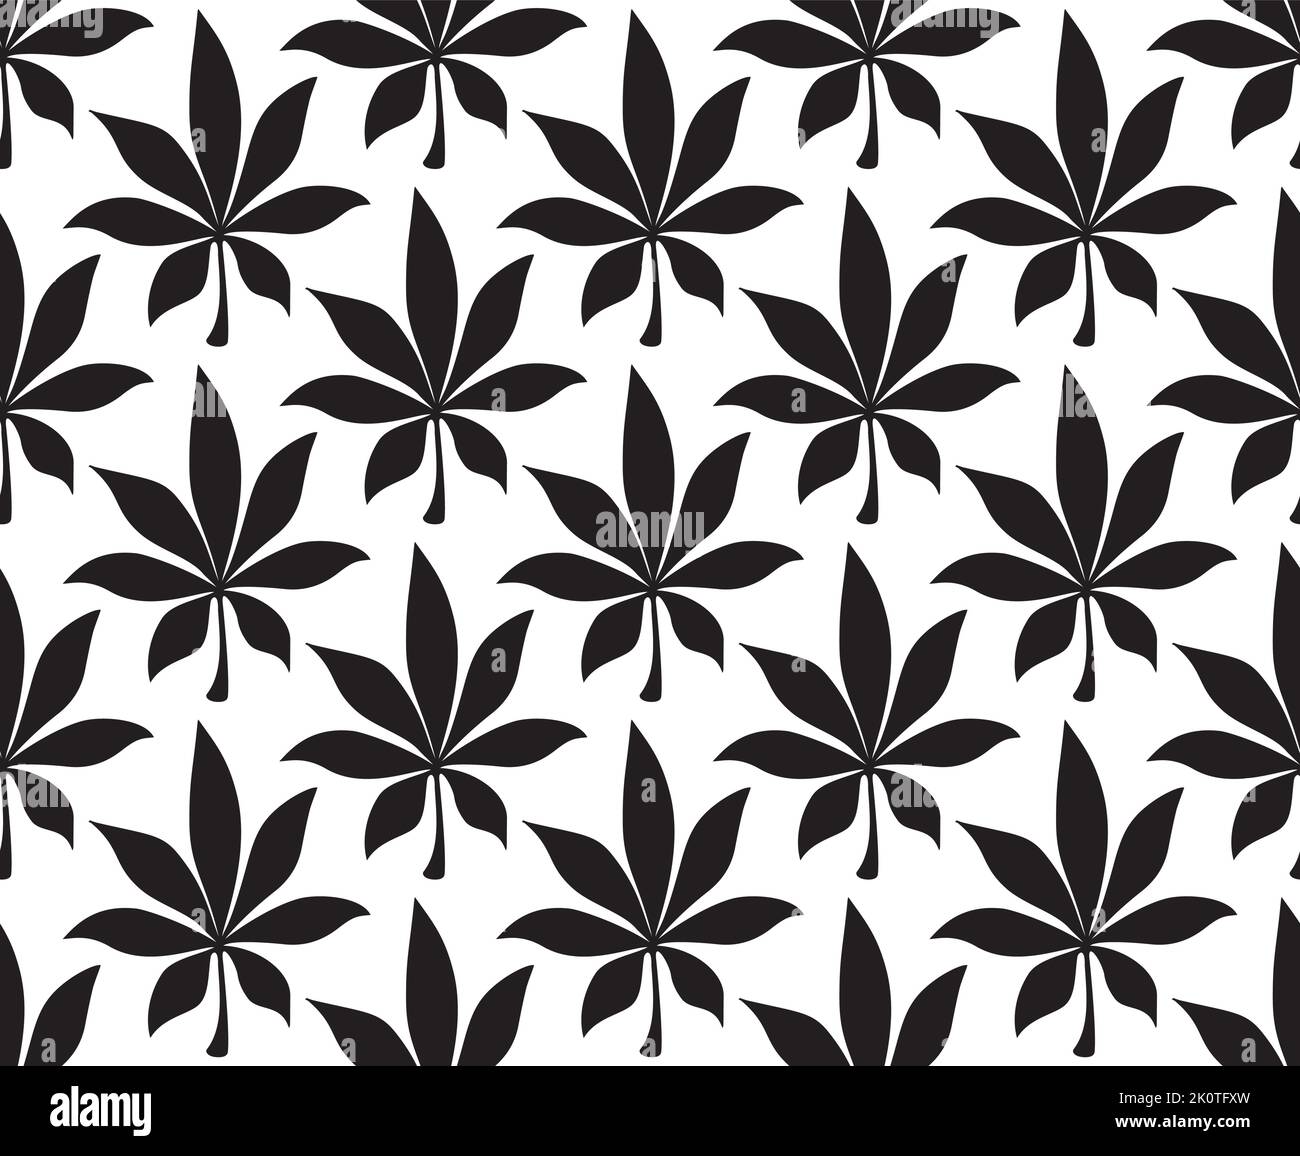 Cannabis cartoon illustration. Hemp pattern seamless vector illustration. Marijuana background Stock Vector